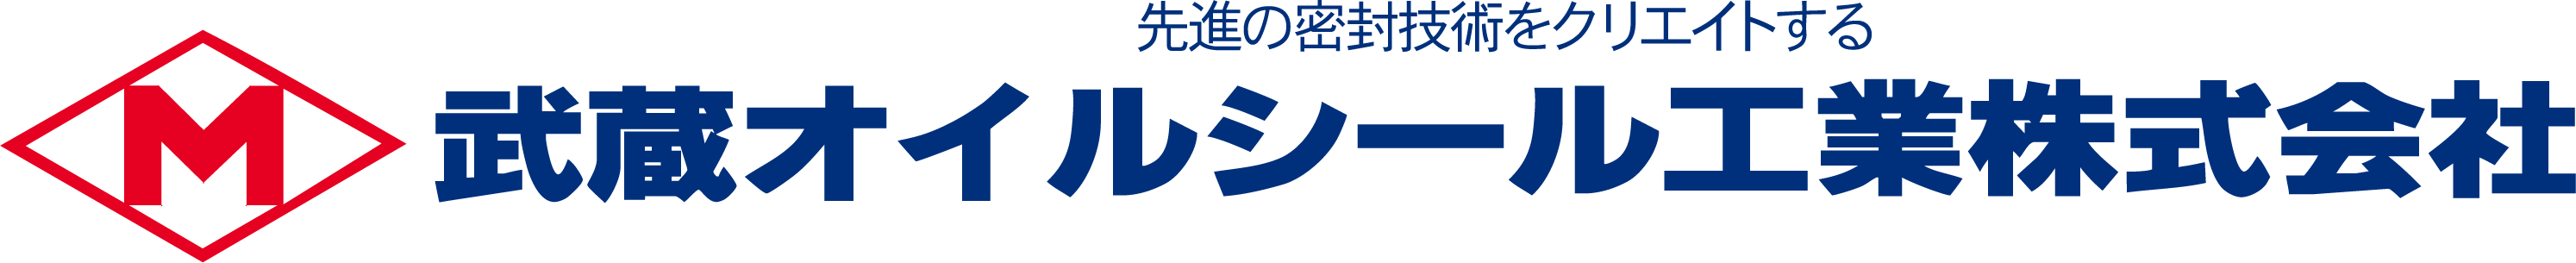 ホイール用オイルシール - 武蔵オイルシール工業株式会社